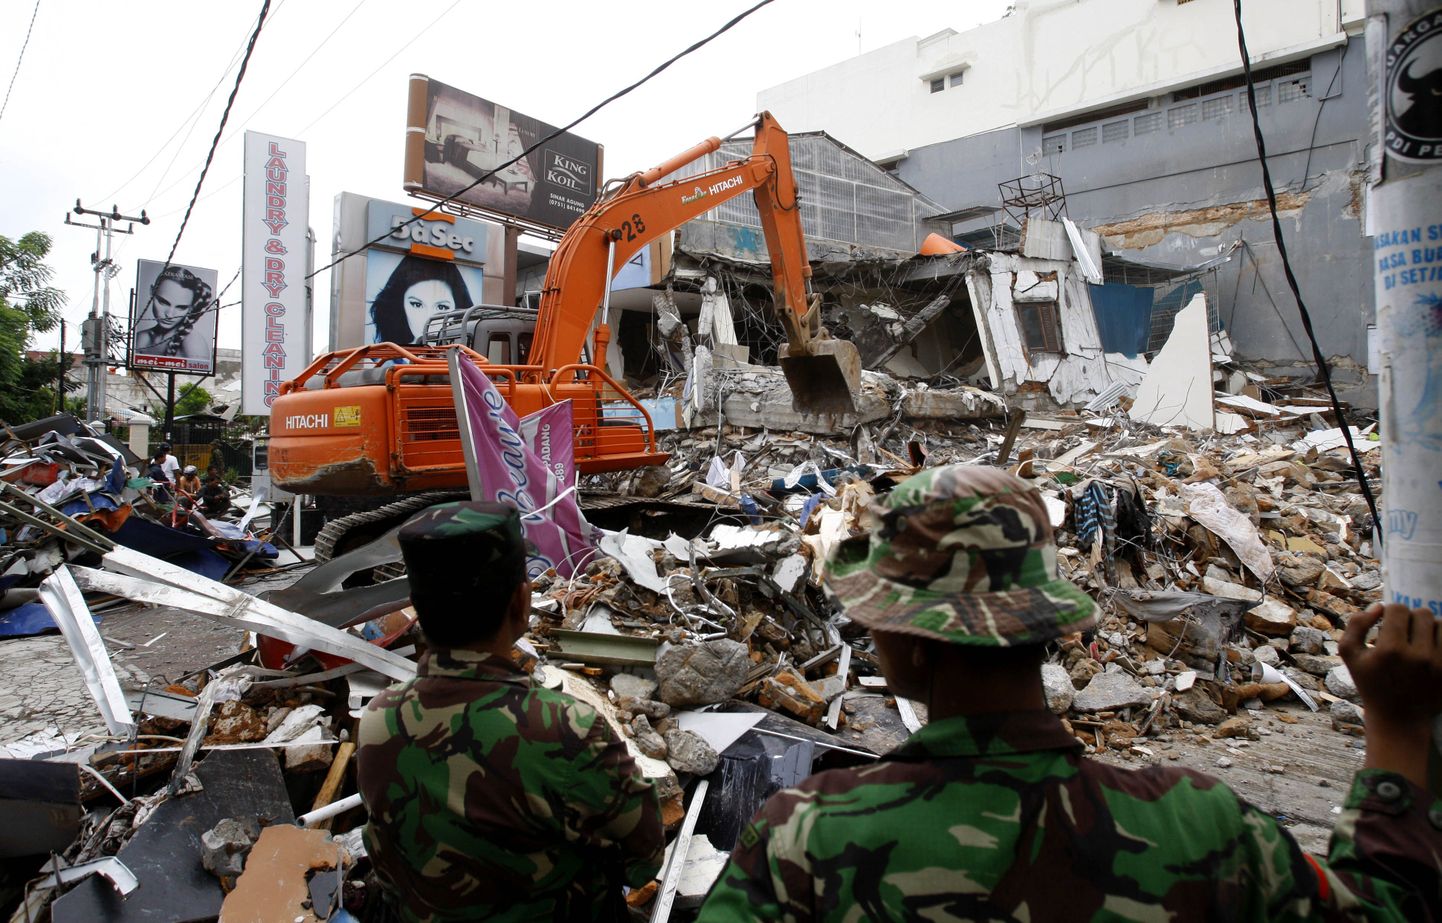 Indoneesia Sumatra saart tabanud võimsa maavärina tekitatud purustused.